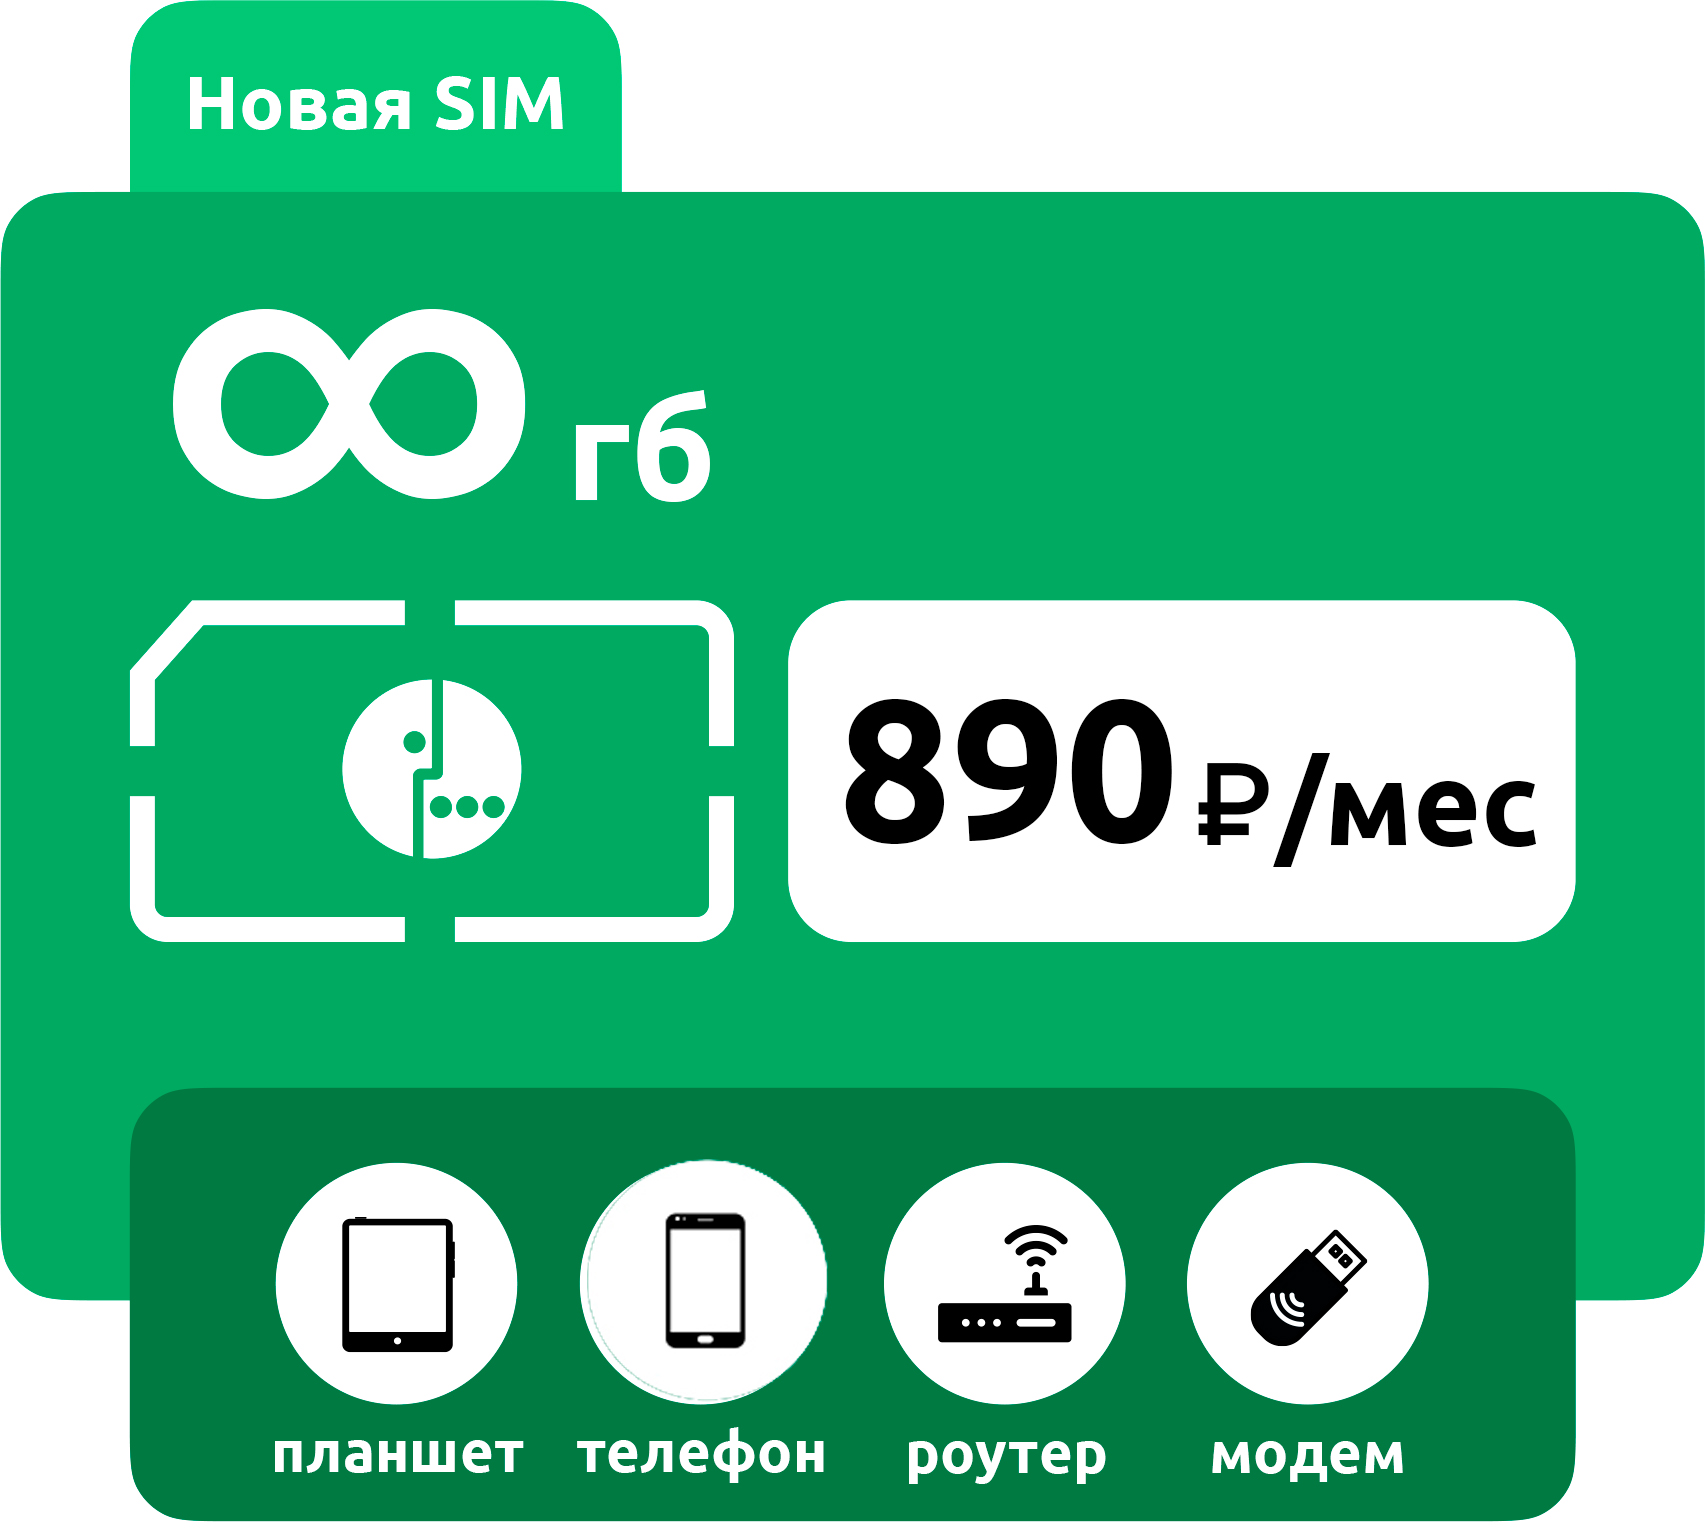 SIM-карта Мегафон 890 безлимит фото